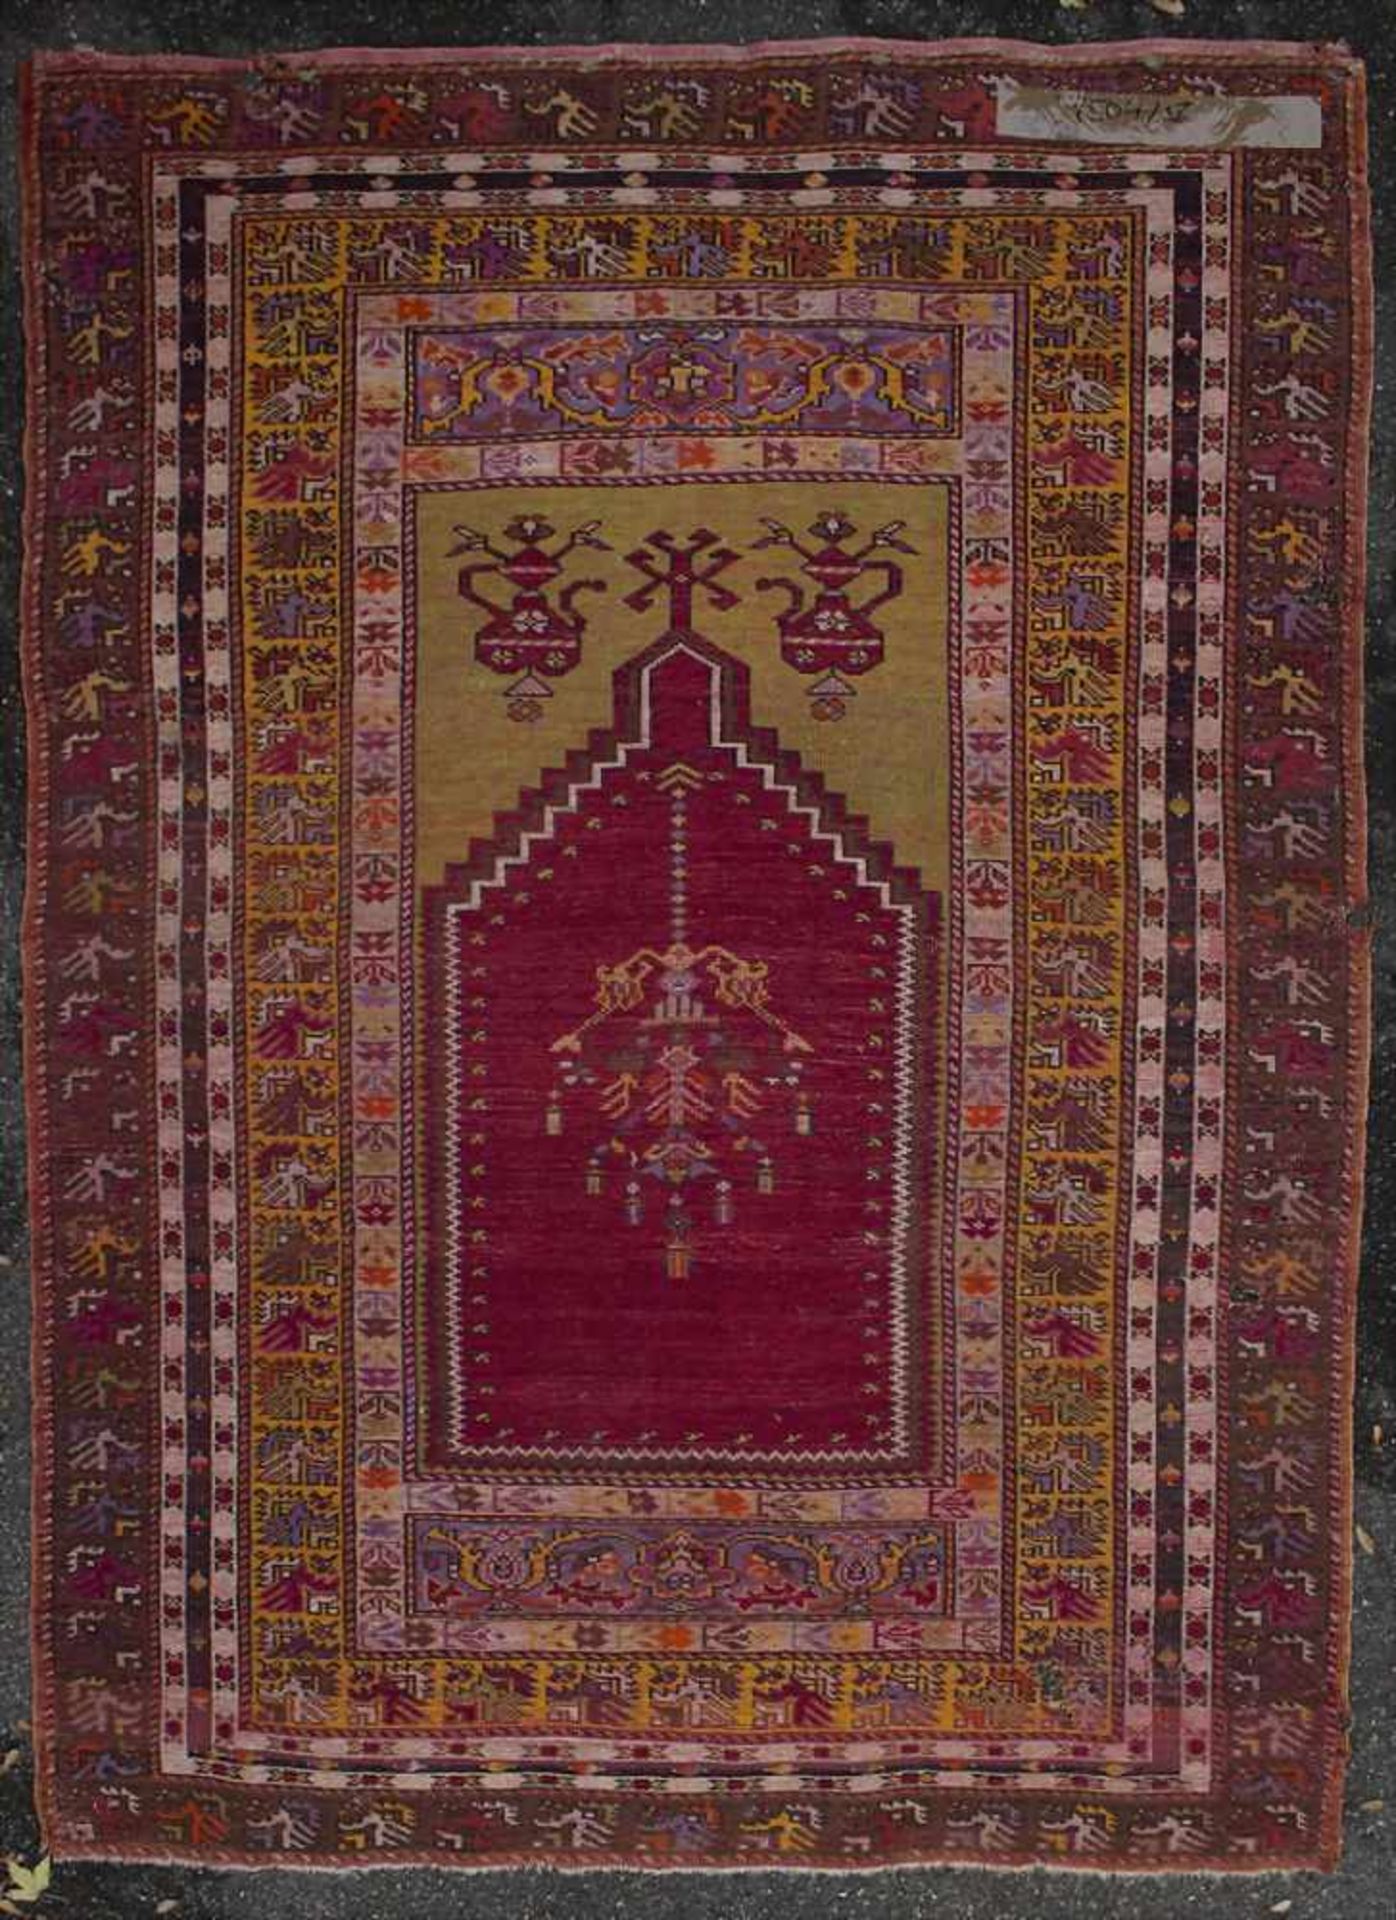 Orientteppich mit Gebetsnische / An oriental carpet with mihrabMaterial: Wolle auf Baumwolle, - Image 2 of 5